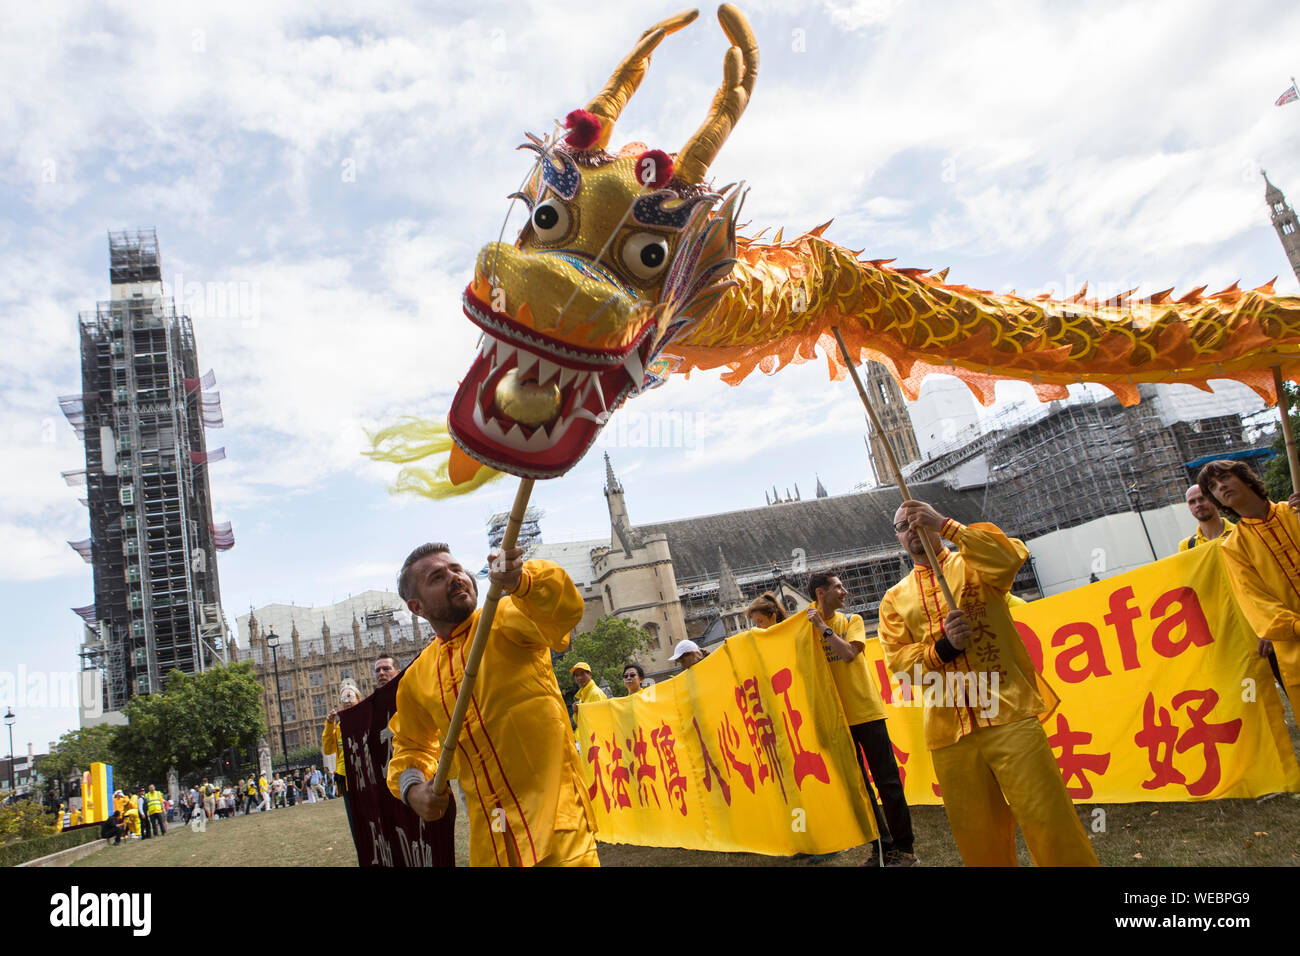 Eine Parade baut auf den Parliament Square in London, mit einem chinesischen Drachen Falun Dafa, eine traditionelle chinesische Meditationspraxis zu fördern. Stockfoto